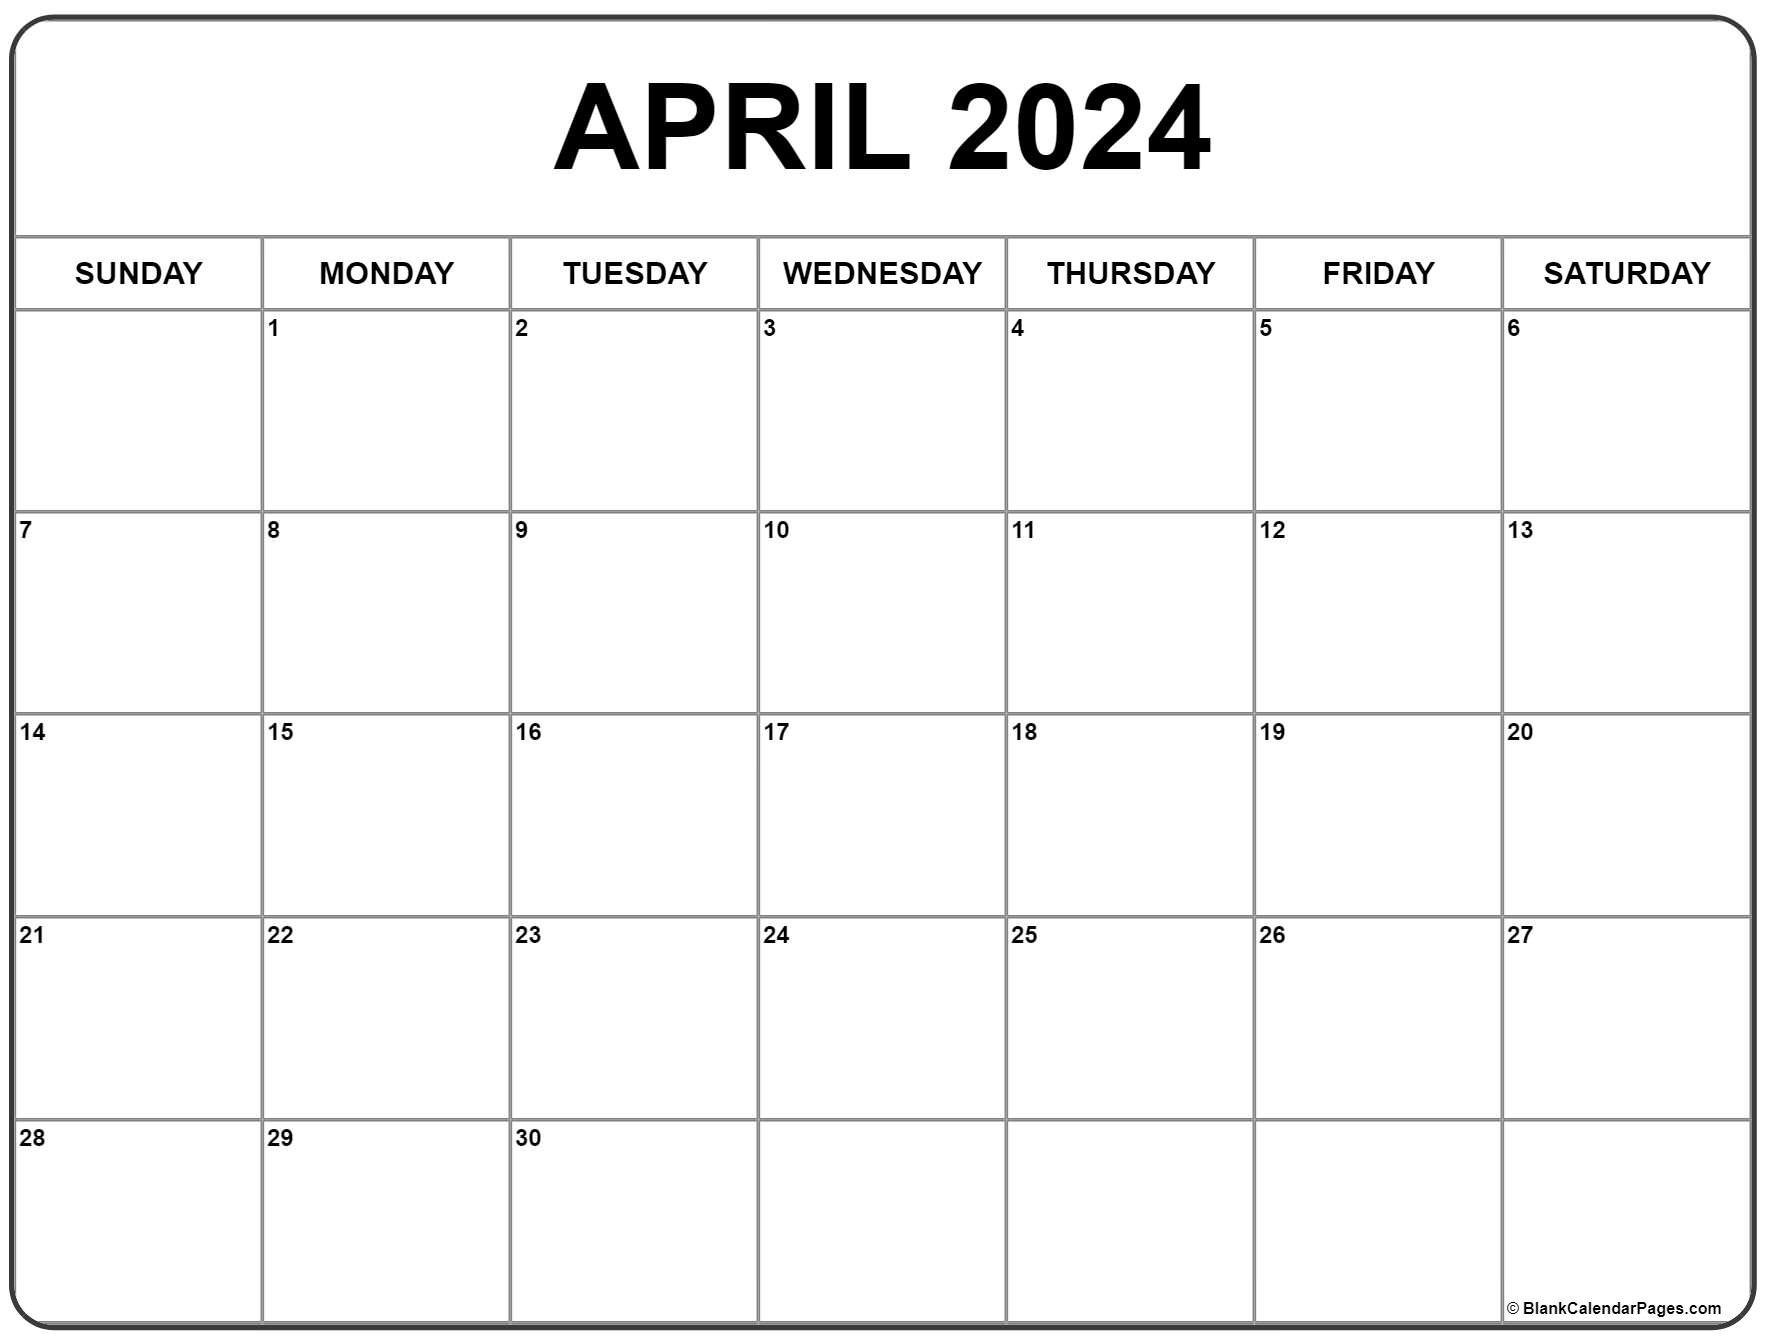 April 2024 Calendar | Free Printable Calendar for Free Printable April Calendar 2024